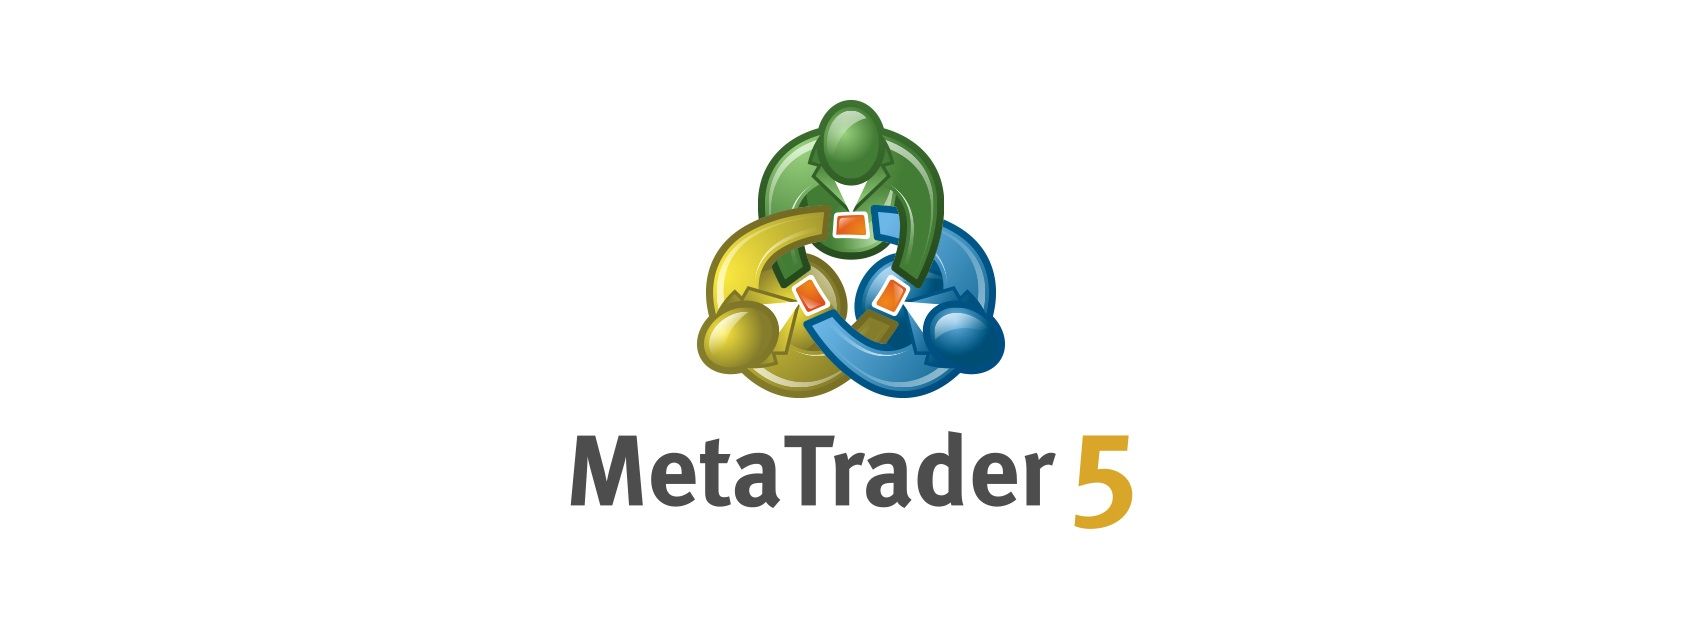 Metatrader 5 lại được cập nhật, lần này MetaQuotes lại thêm gì?